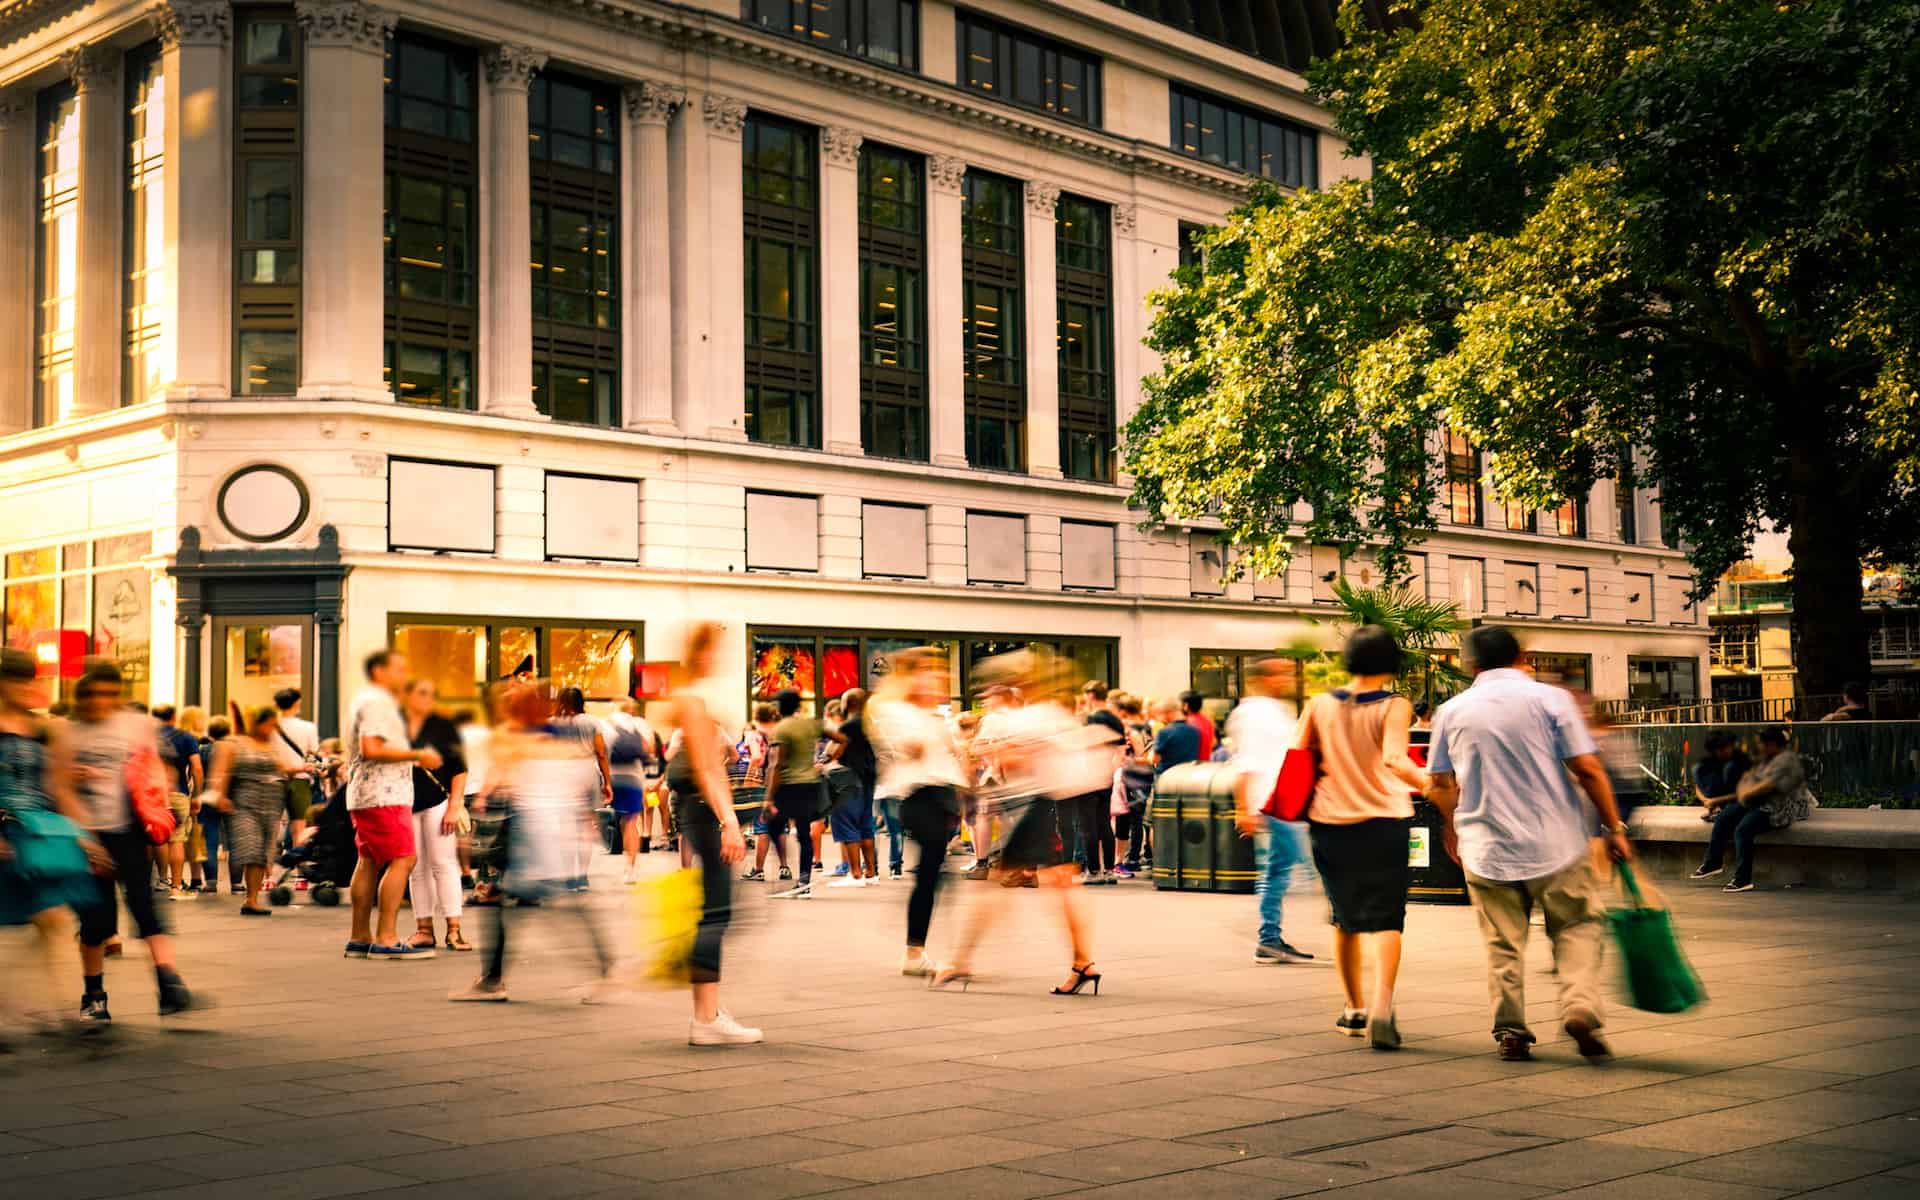 Motion blurred shopping street scene